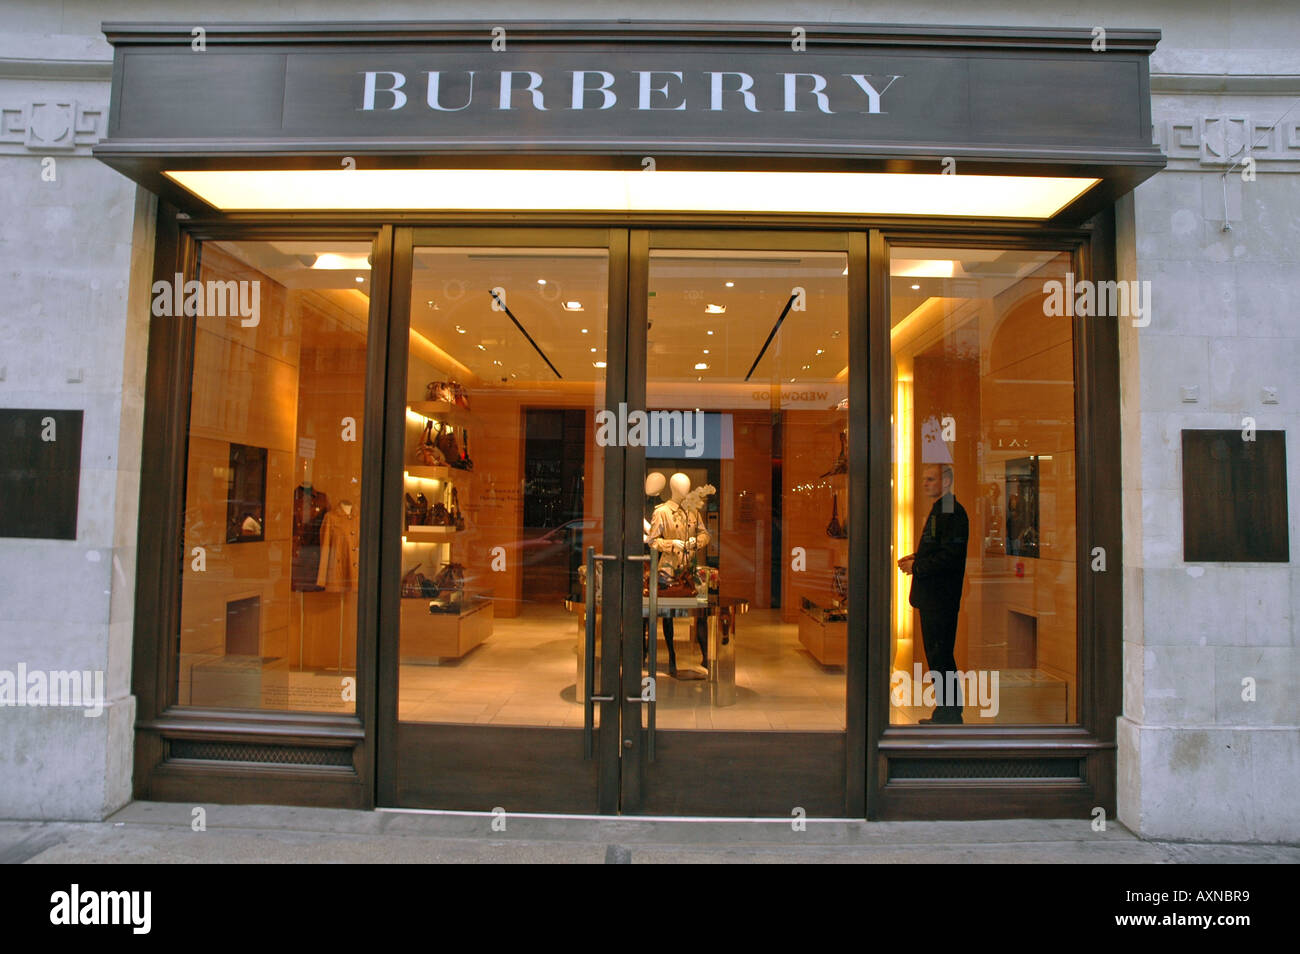 burberry uk online shop